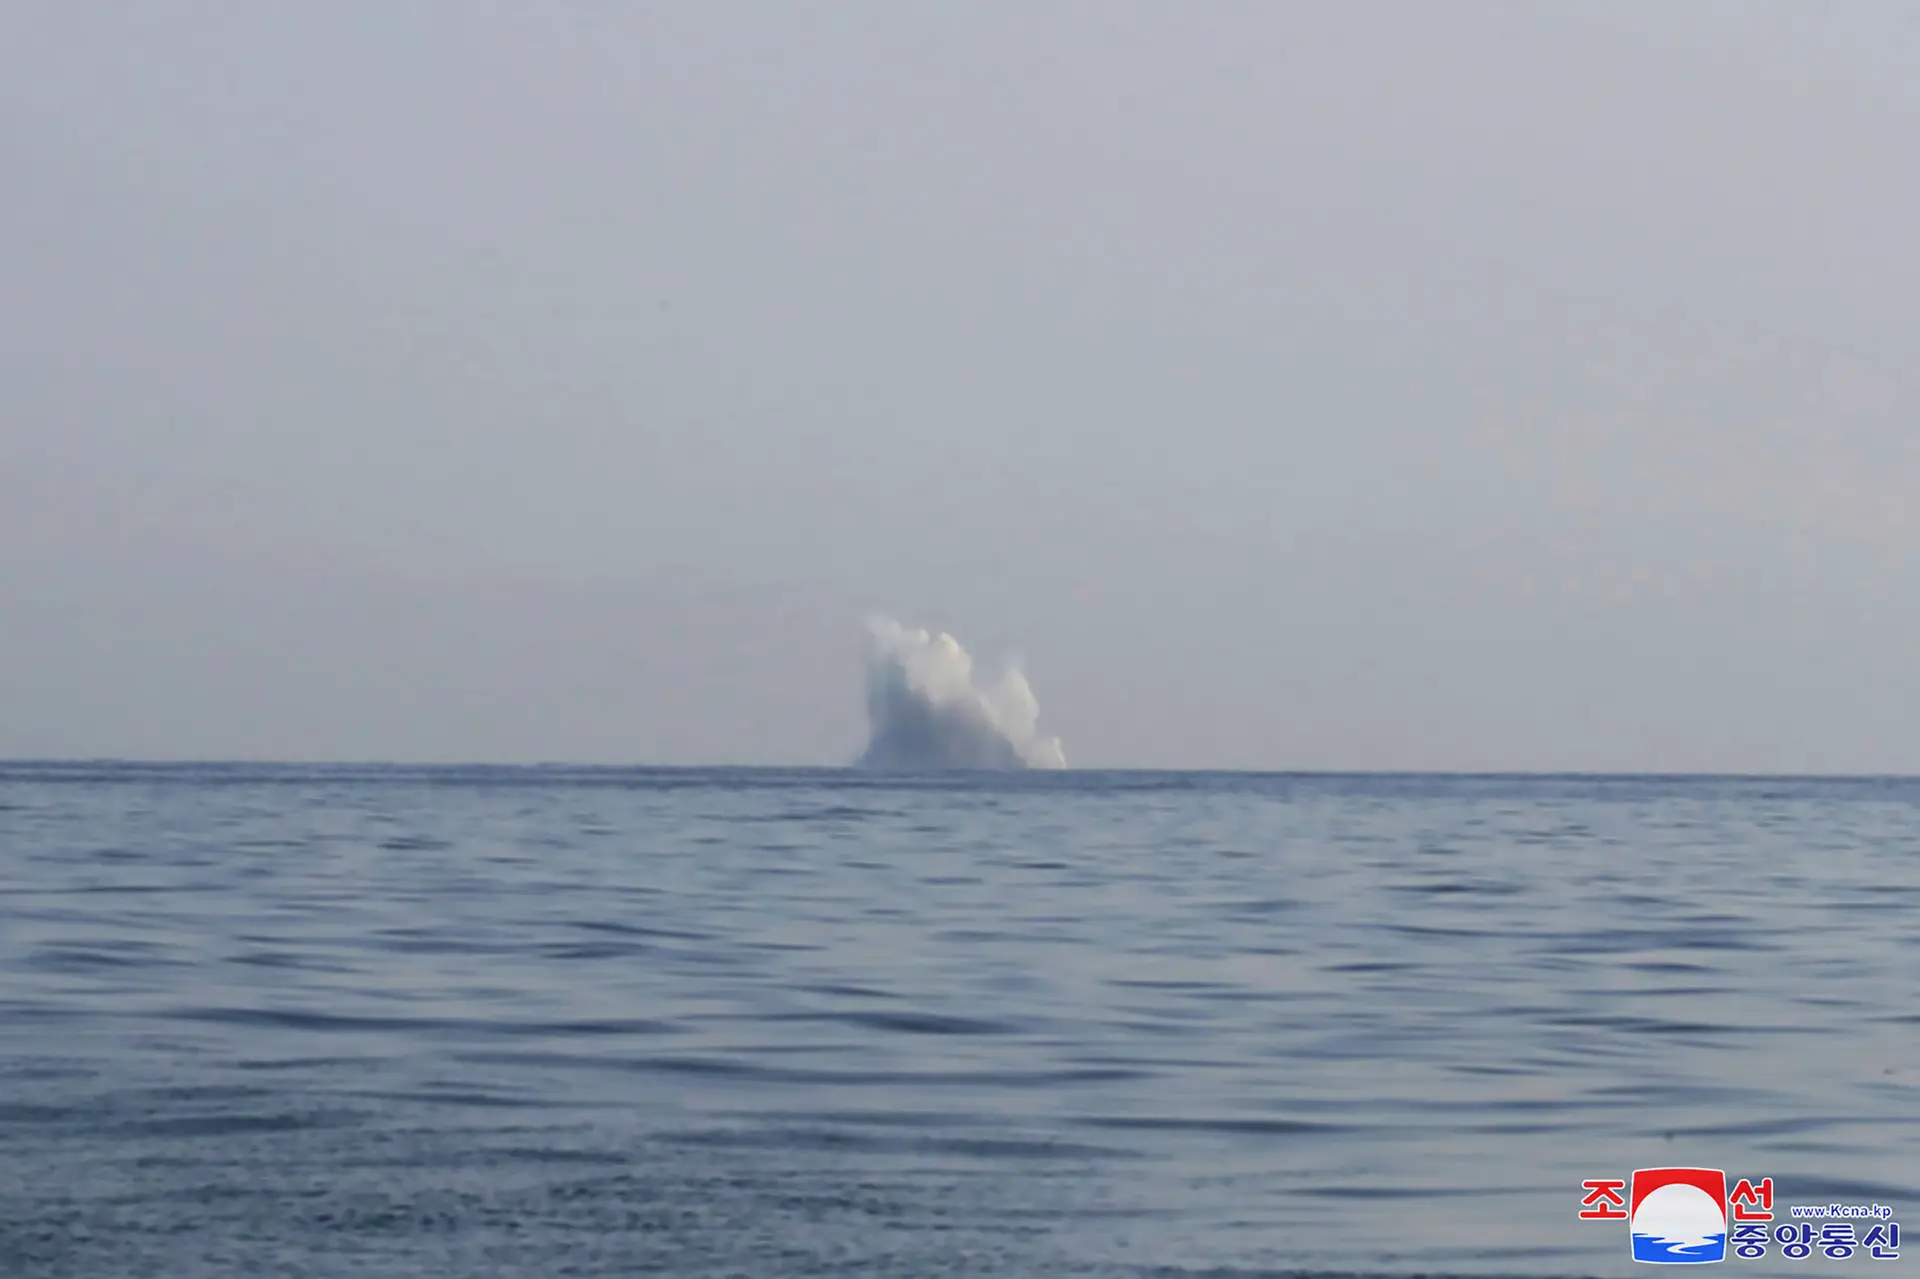 Coreia do Norte volta a testar drone submarino capaz de gerar tsunamis radioativos